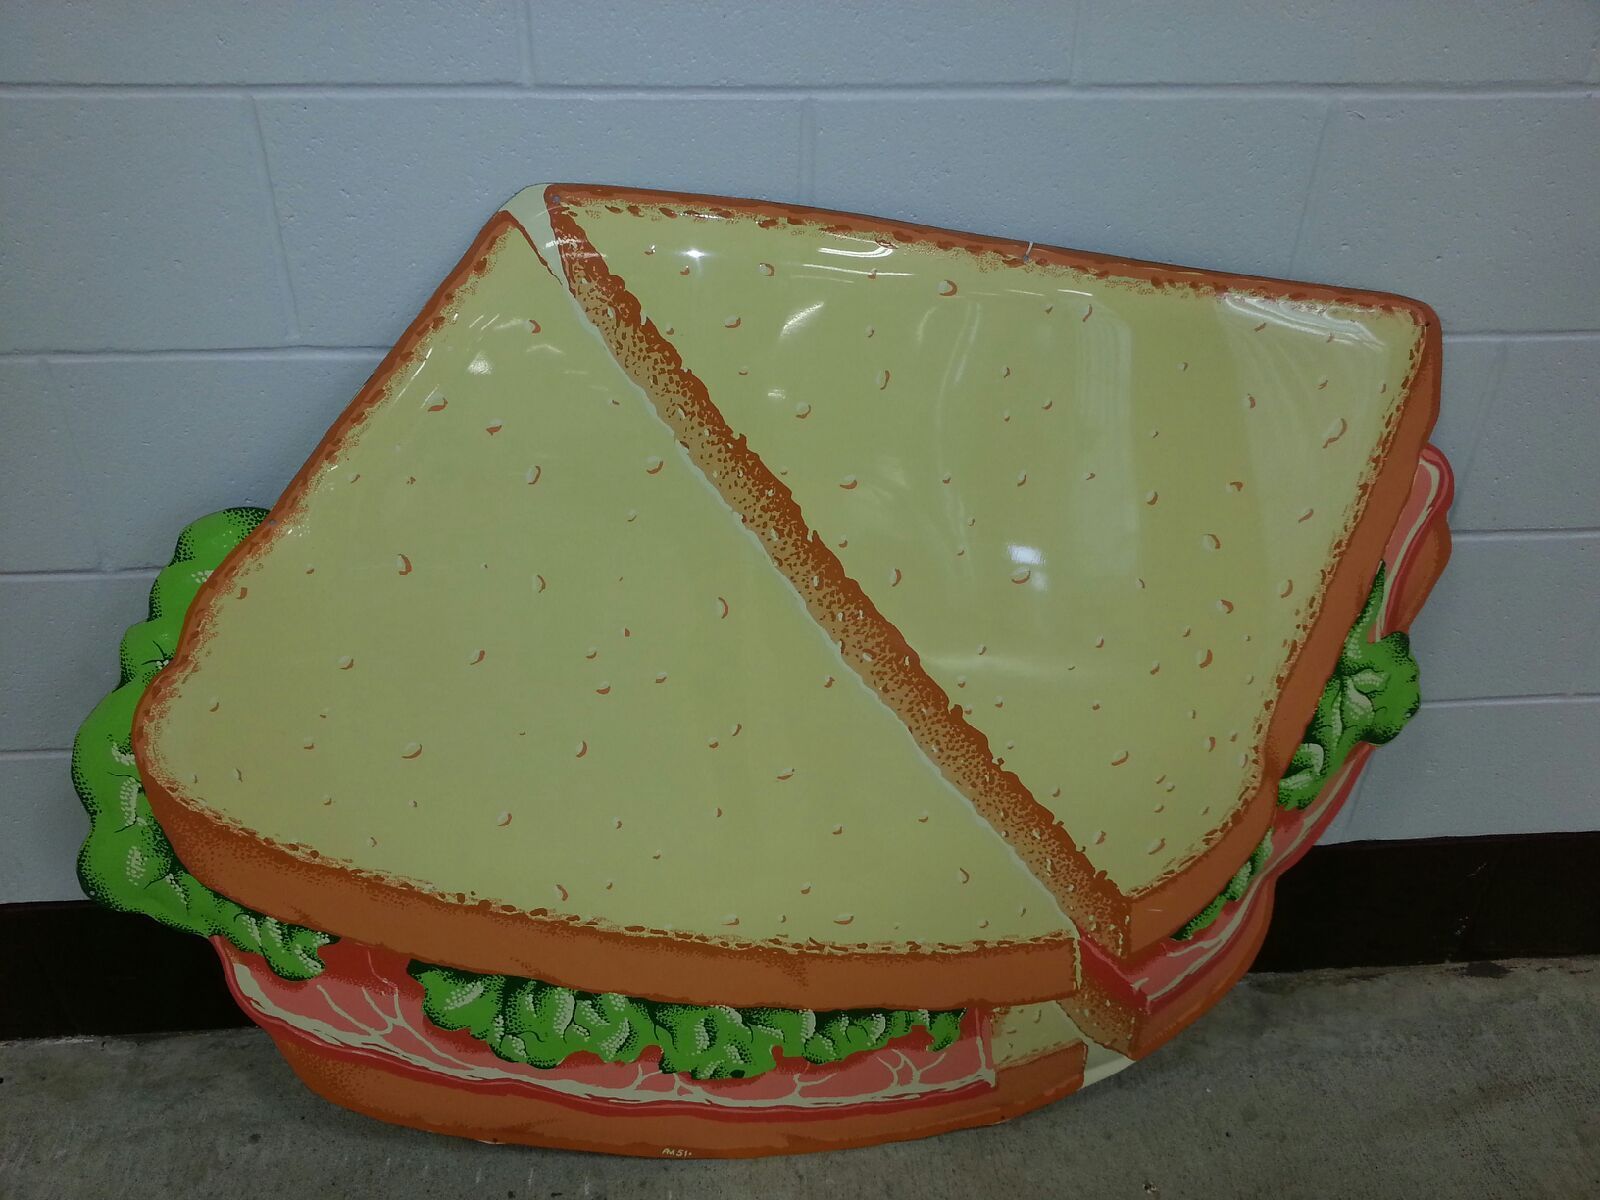 Giant 1950's Convex Cut-Out Ham Sandwich Sign